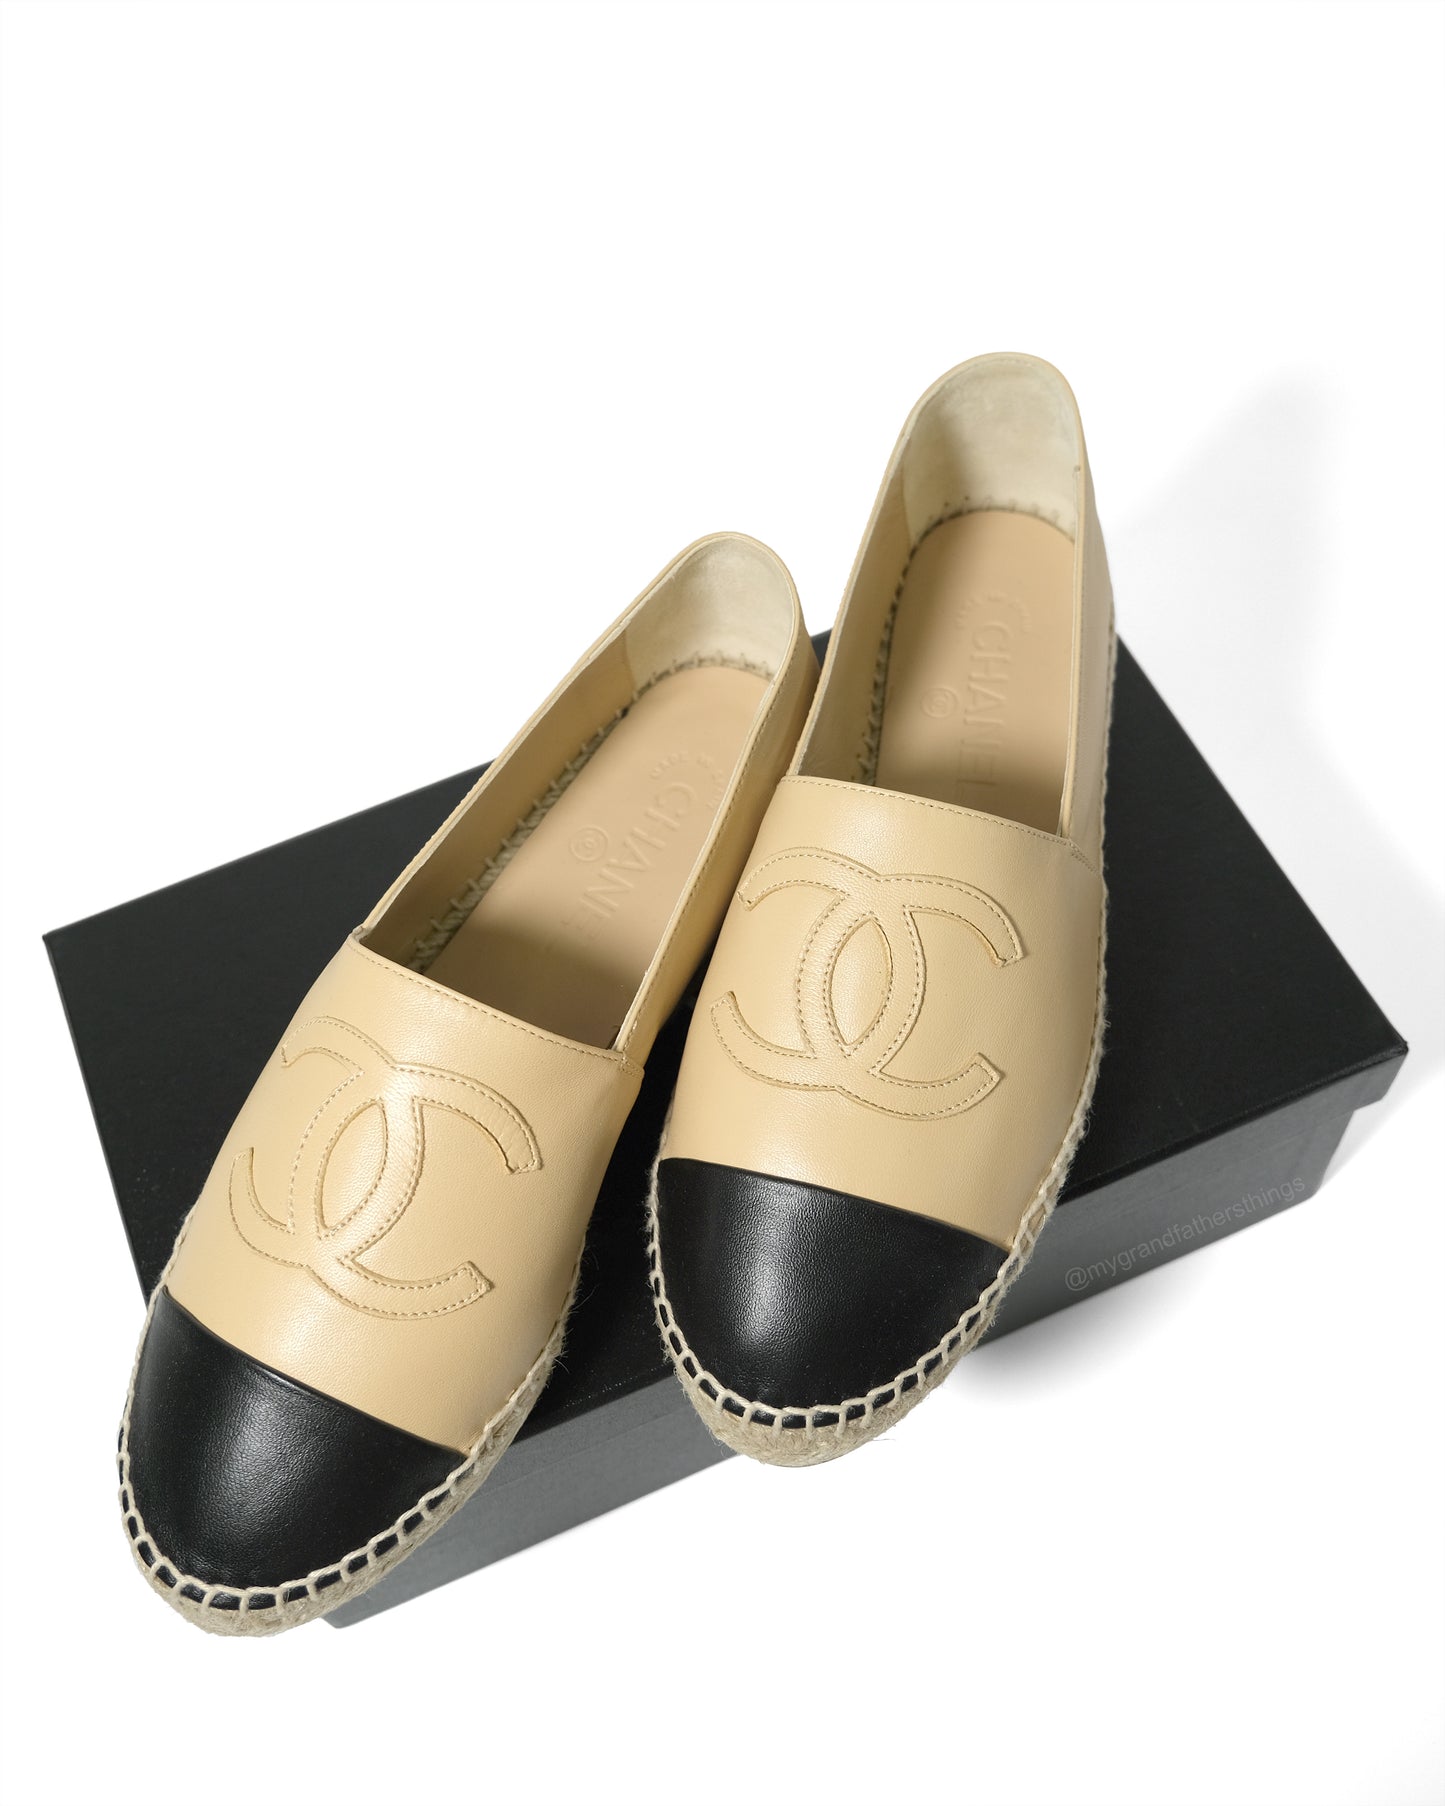 Chanel Espadrilles Size 39